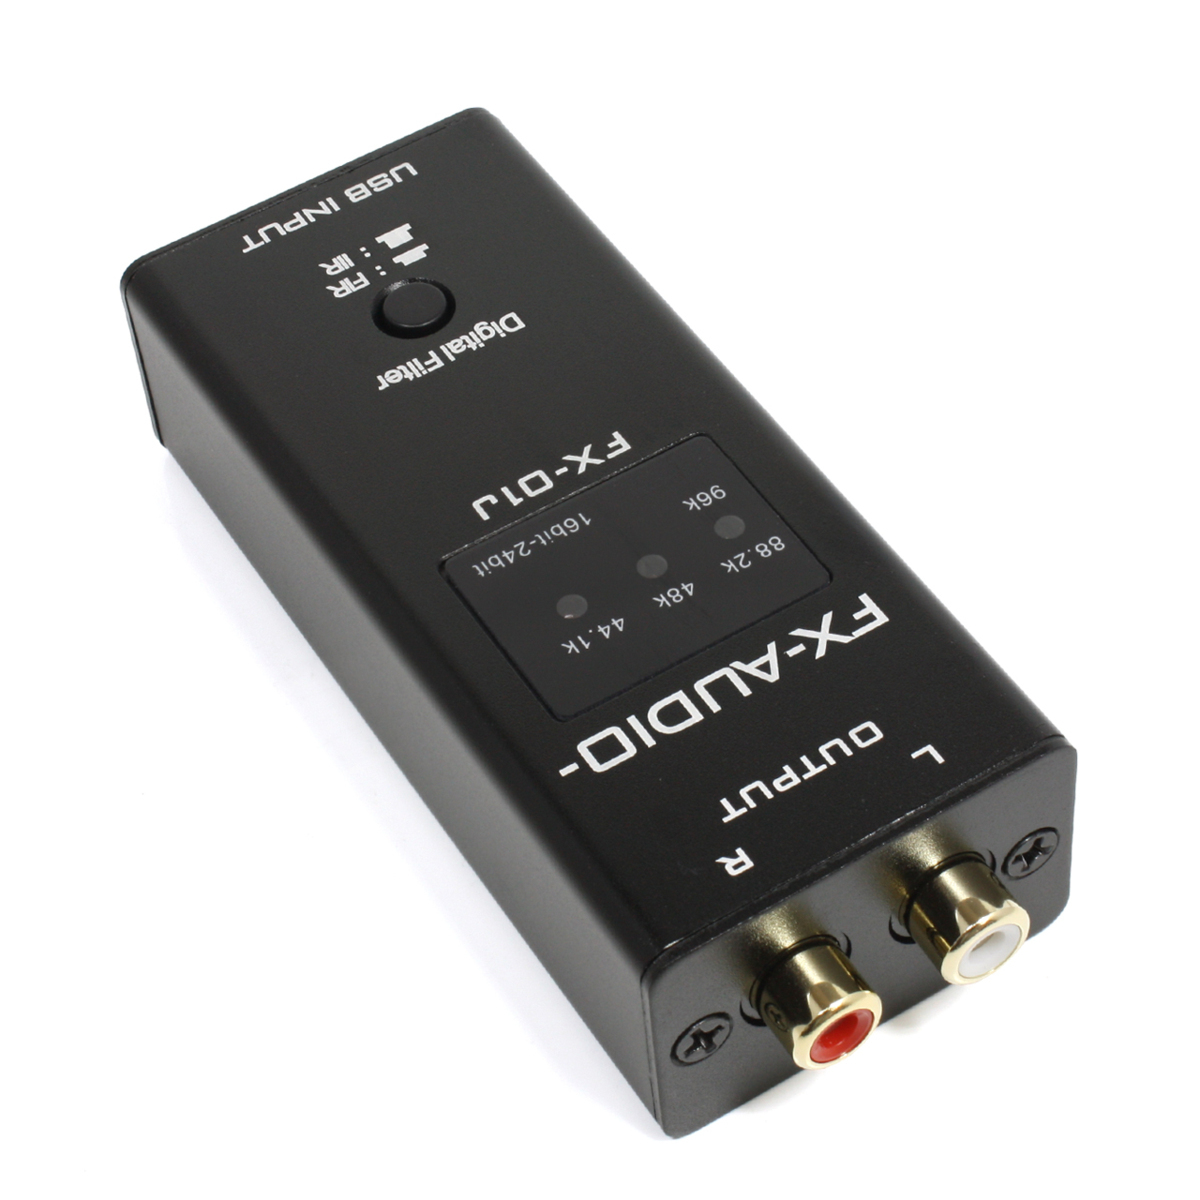 FX-AUDIO- FX-01J TYPE-B PCM5101A搭載 USB バスパワー駆動 ハイレゾ対応DAC_画像3